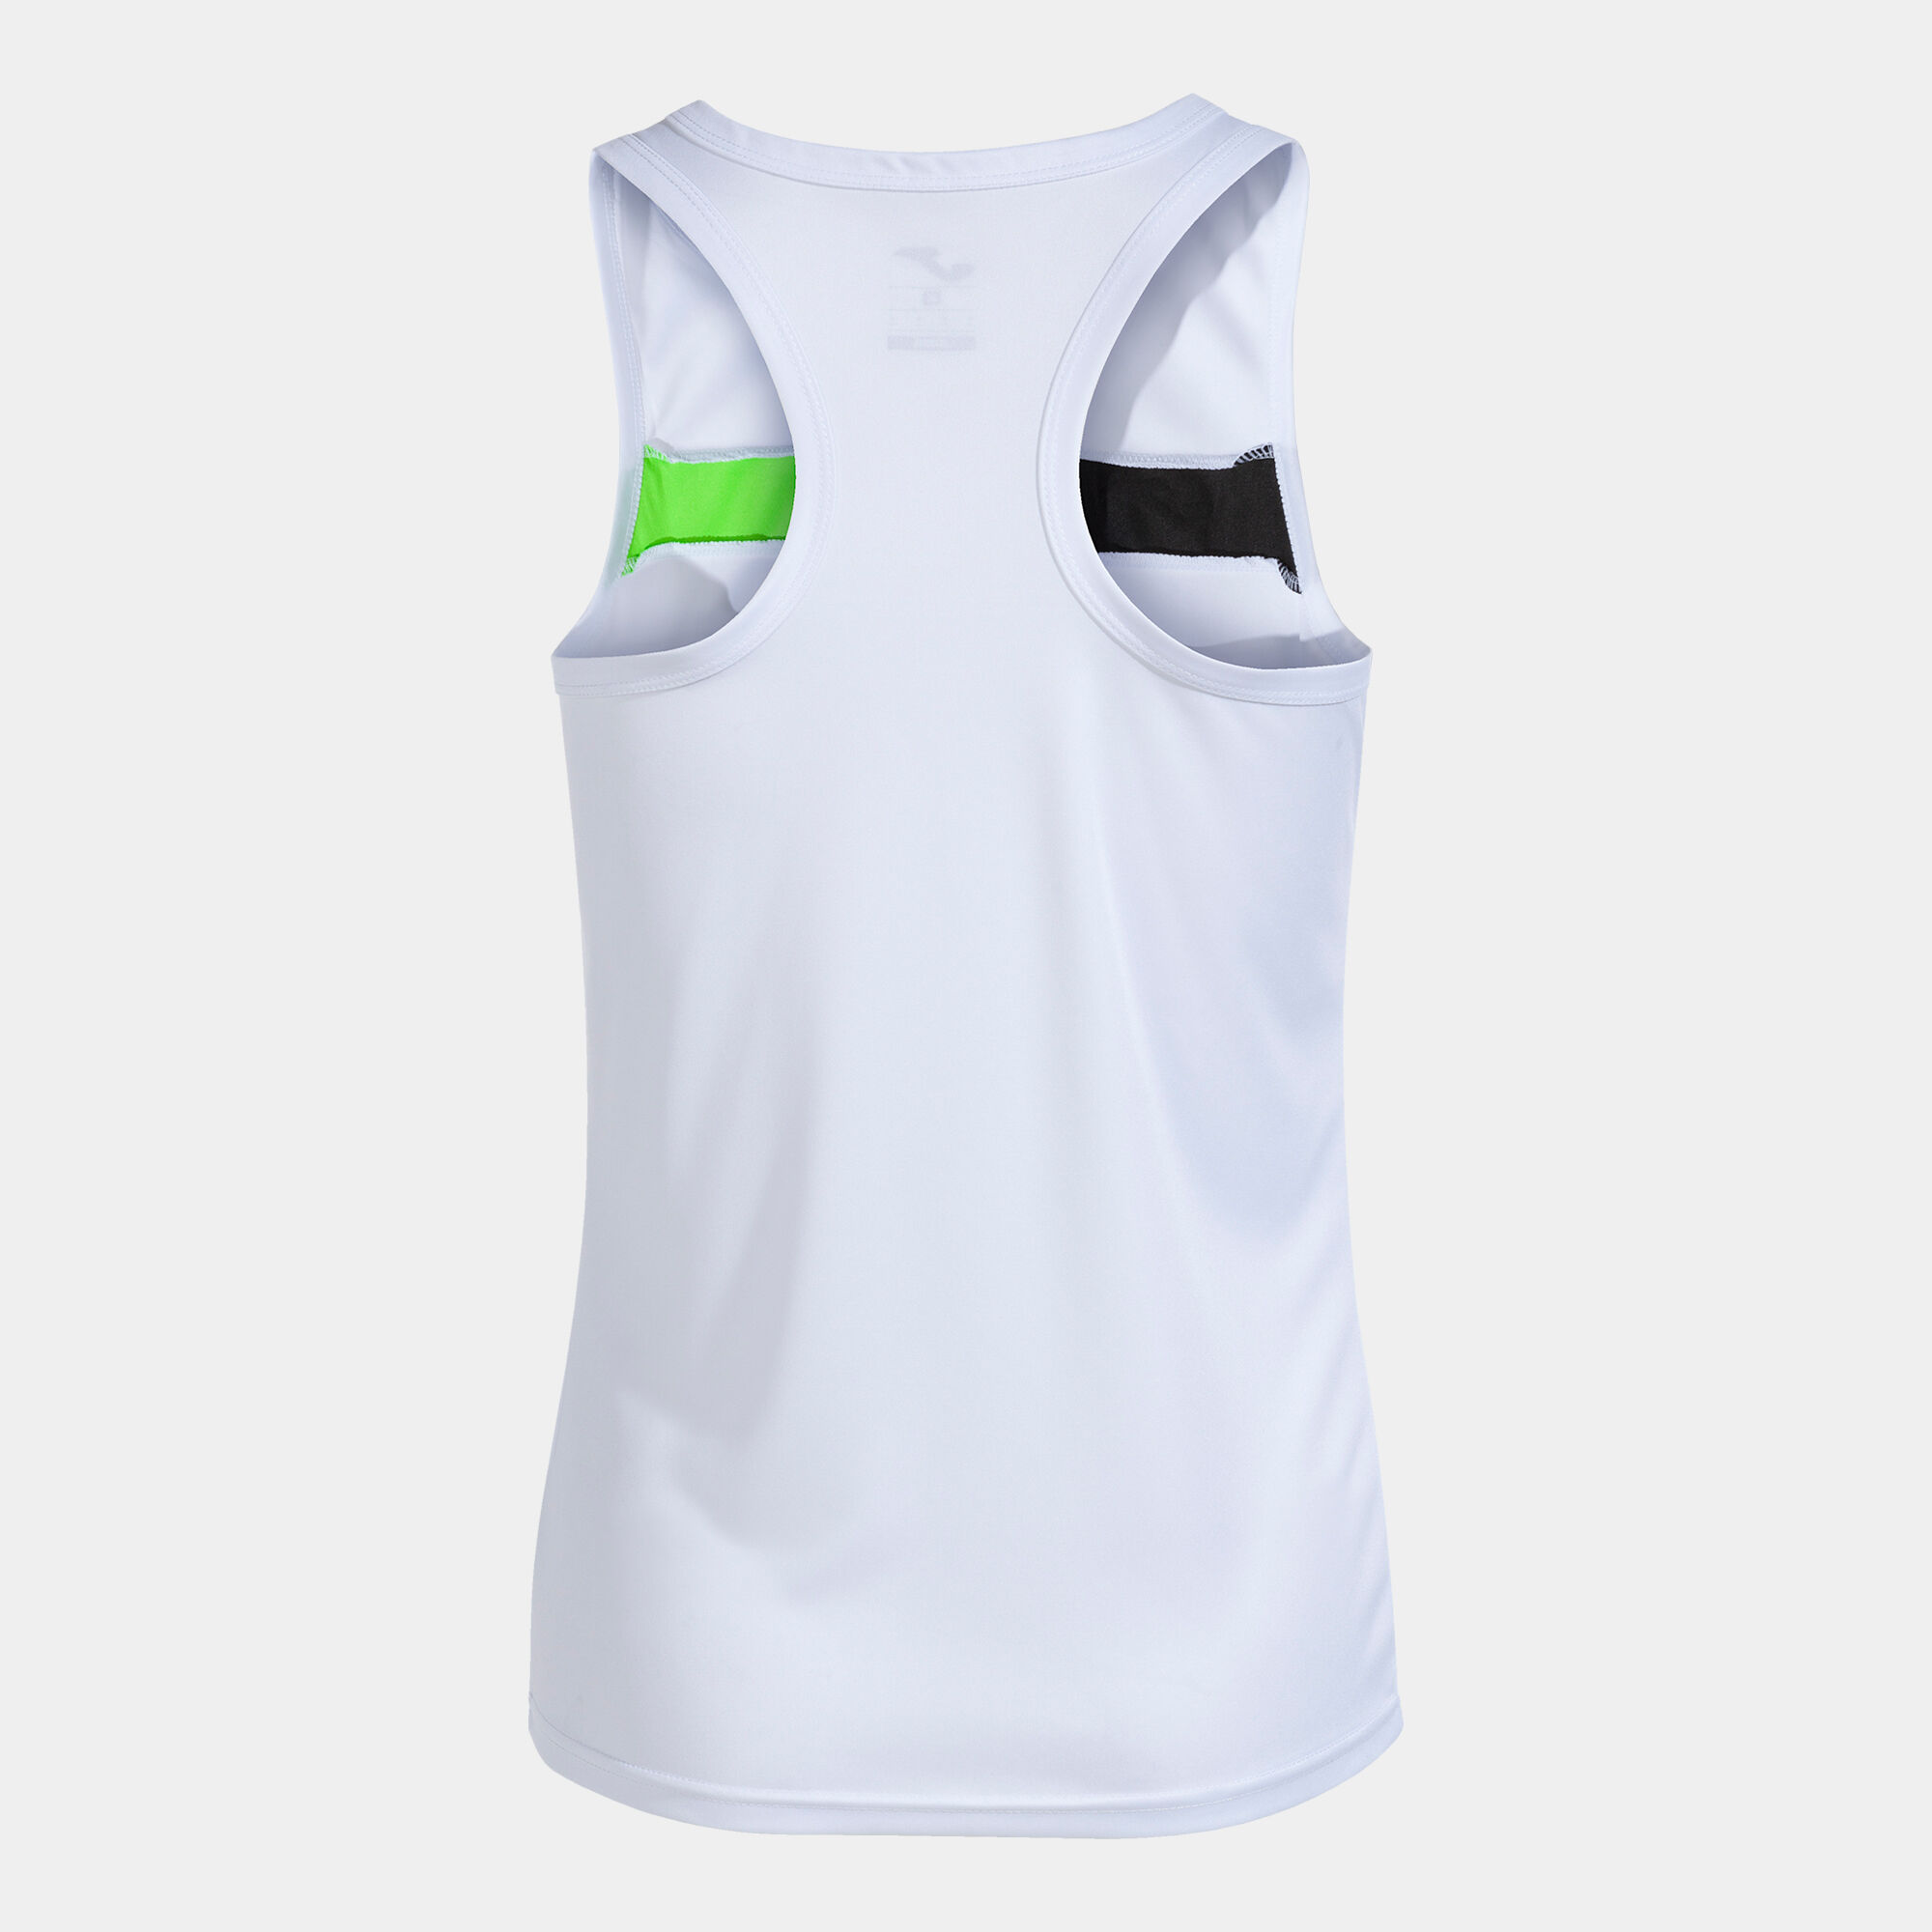 Koszulka bez rękawów kobiety Court bialy fluorescencyjny zielony